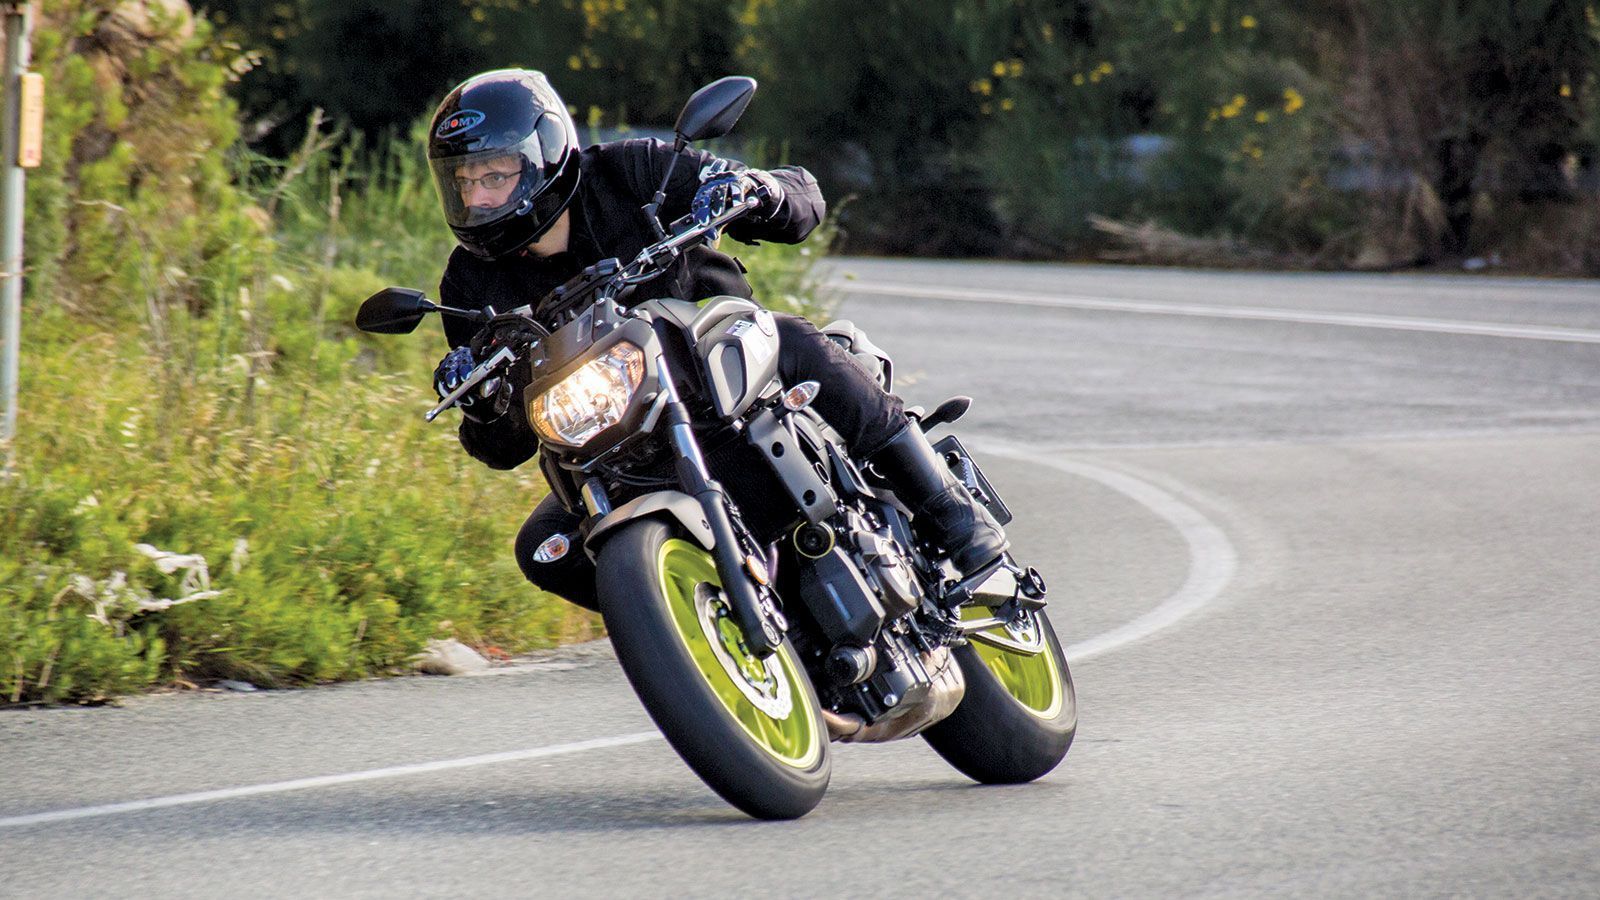 Δοκιμή: Honda CB650F (#193GR) - BuySellMoto.com